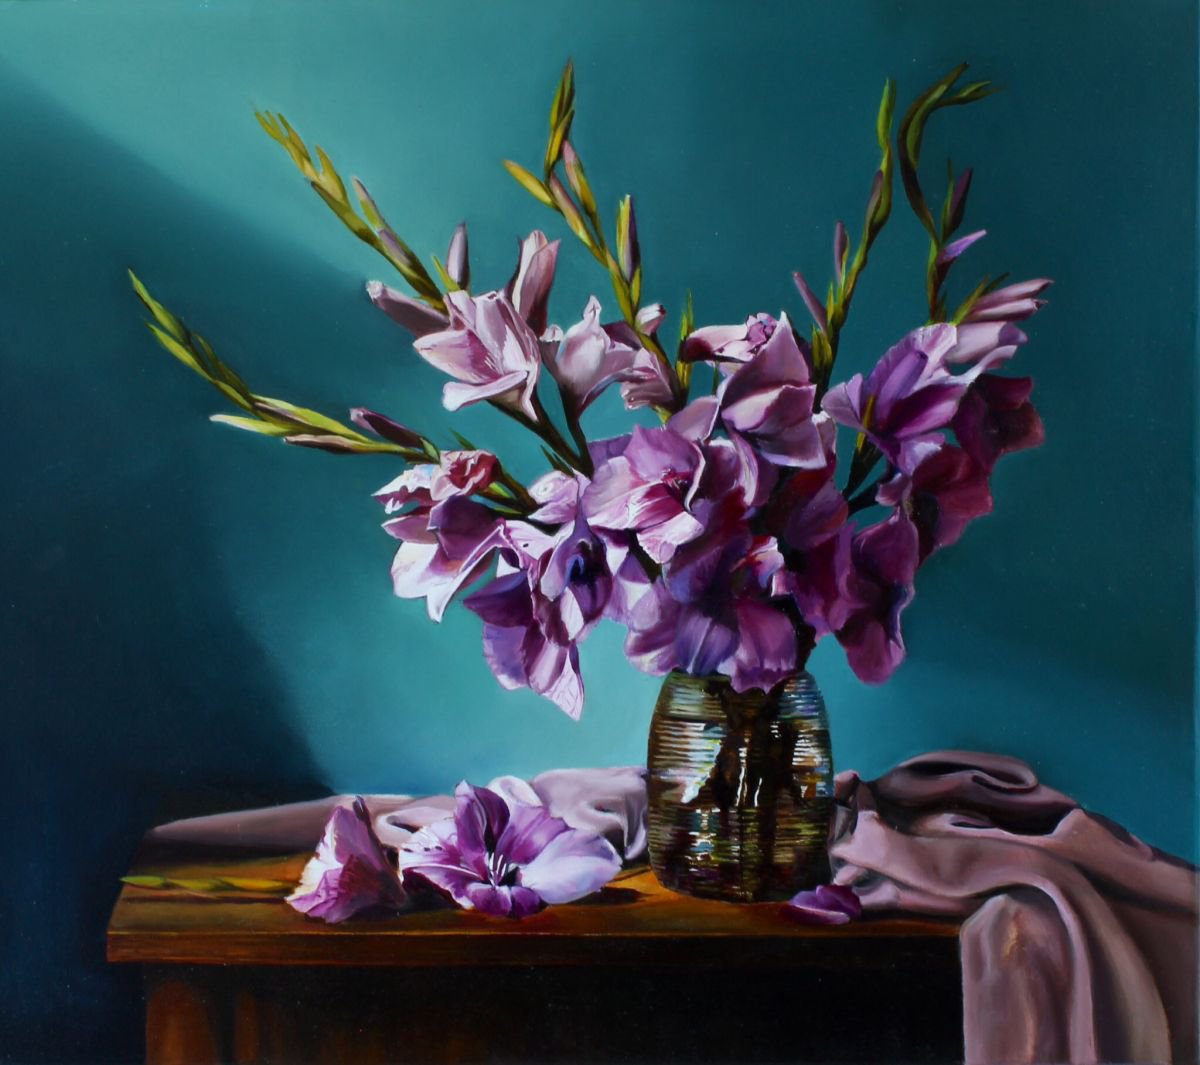 Gladiolus by Natalia Lugovskaya